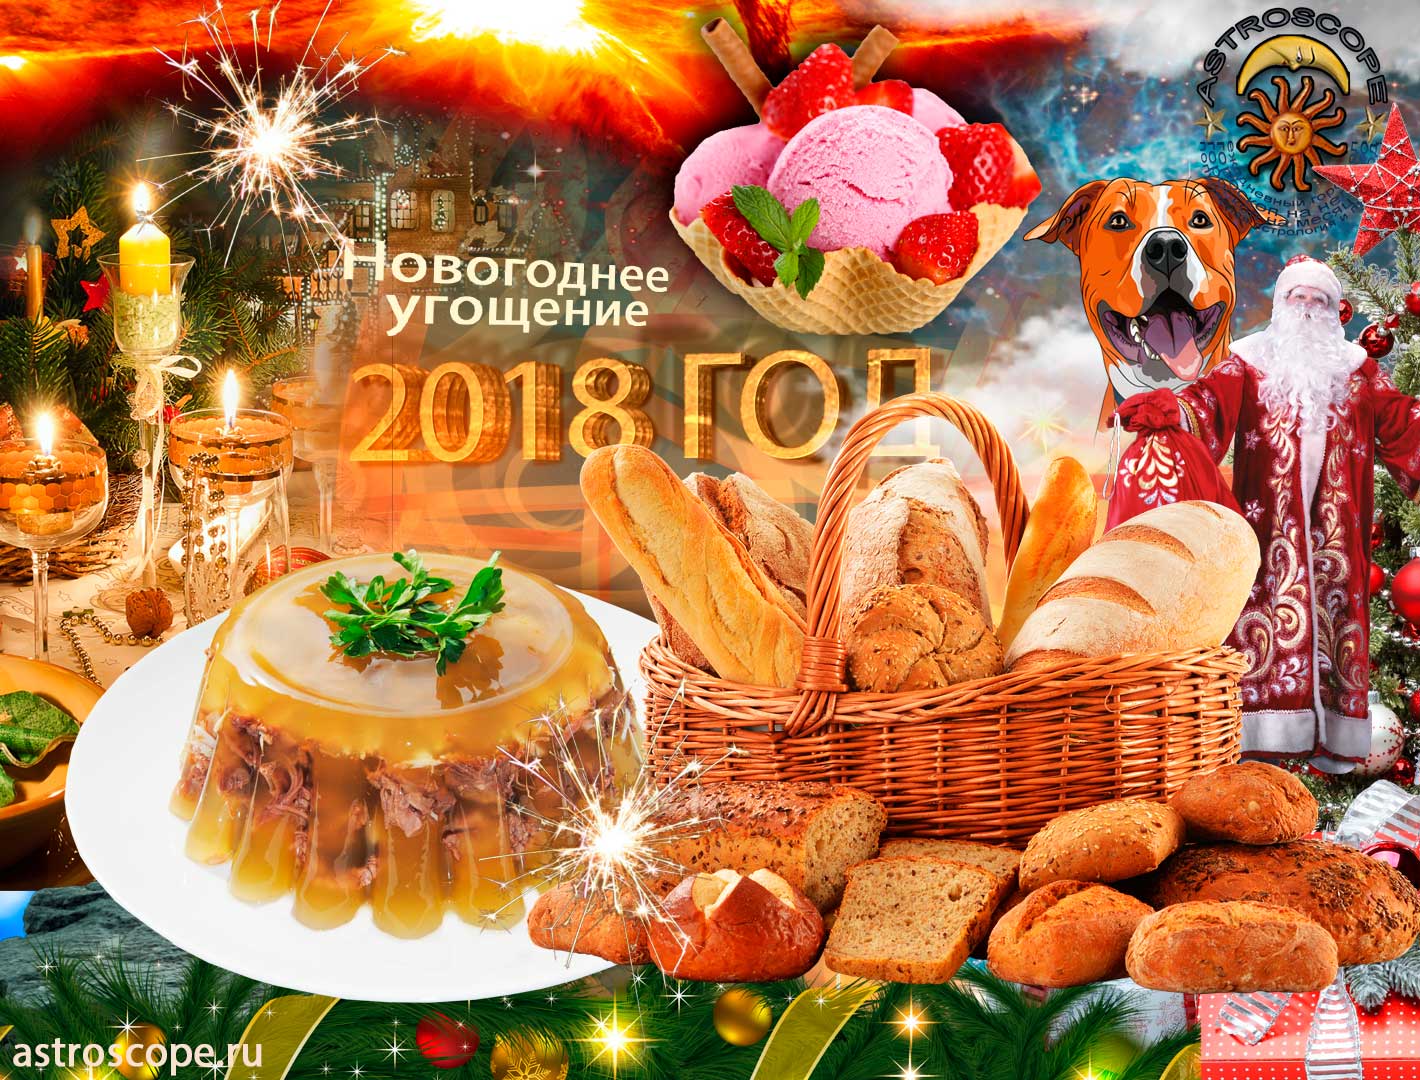 Новый год 2018: год Собаки, что готовить на новогодний стол